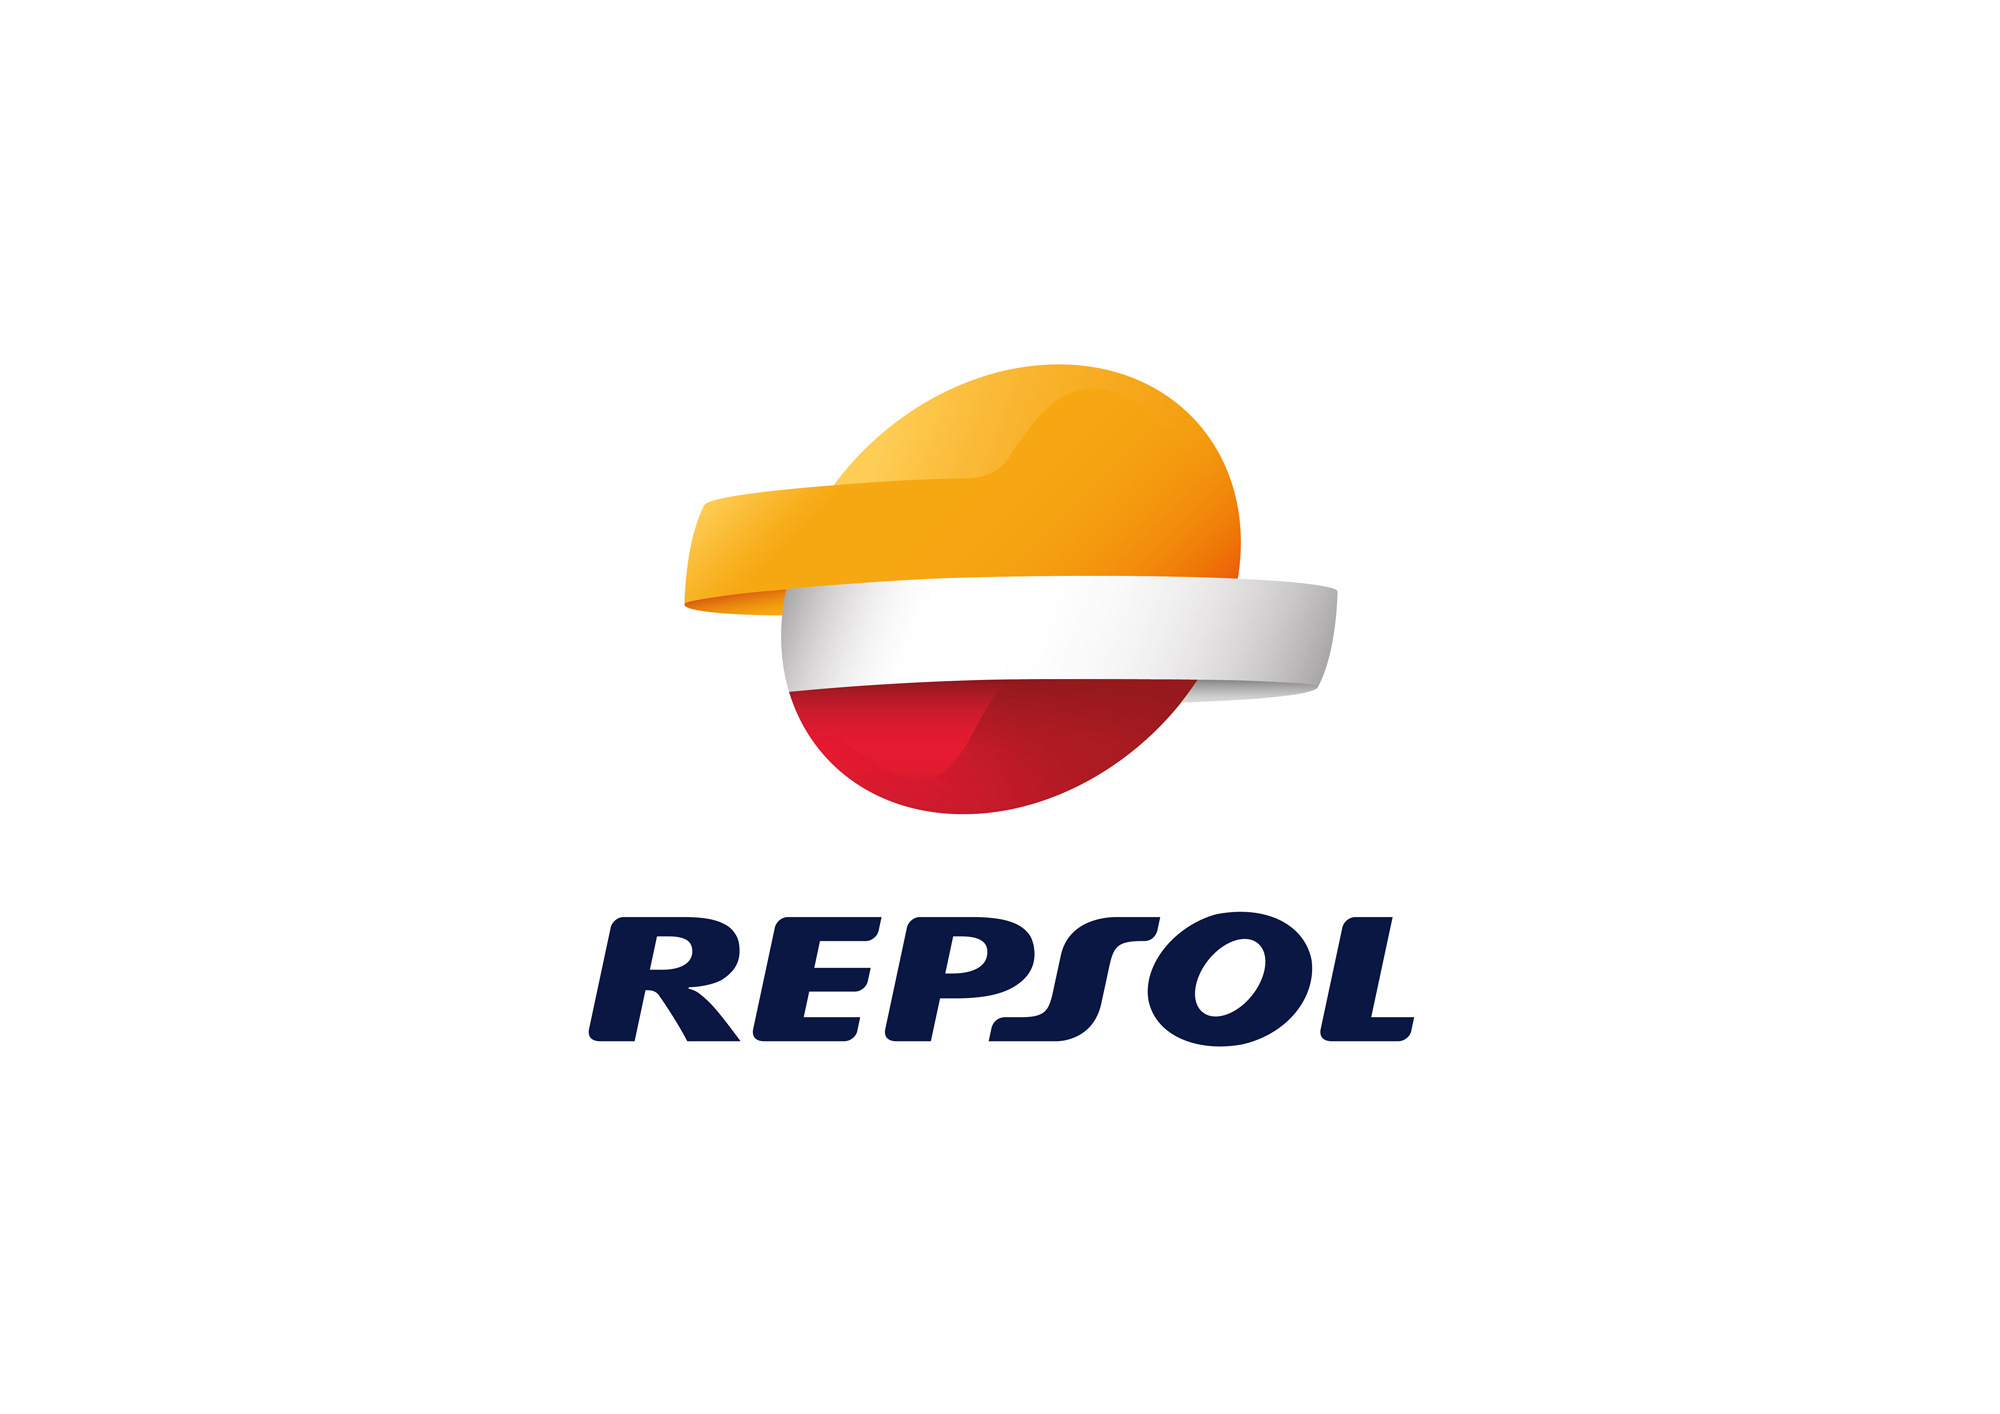 Repsol Oil & Gas Can